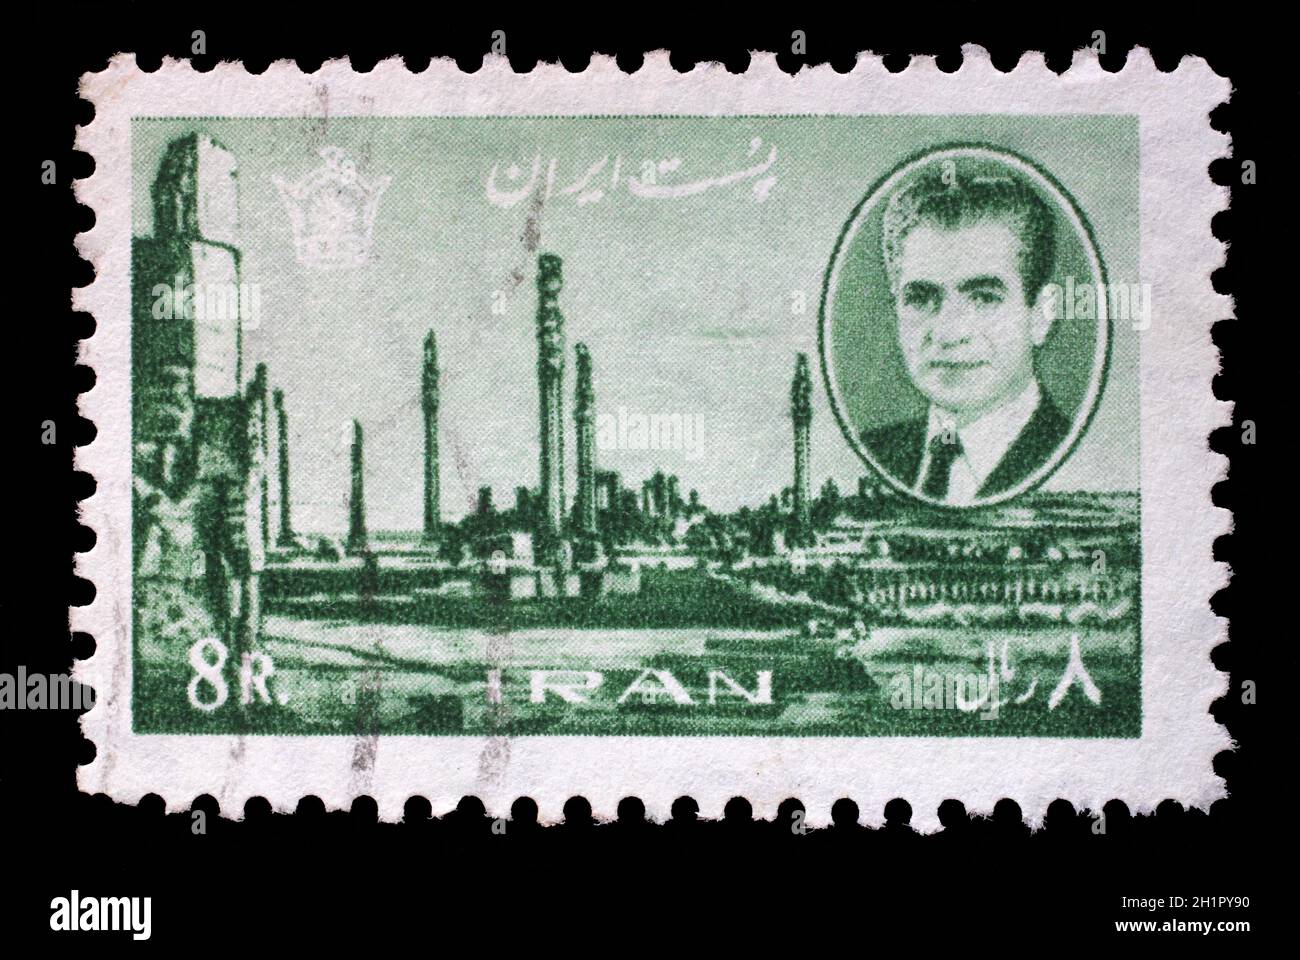 Francobollo stampato in Iran mostra Shah Mohammad Reza Pahlavi, sullo sfondo delle rovine di Persepolis, capitale dell'antica Persia, distrutto eserciti di Alessandro Foto Stock